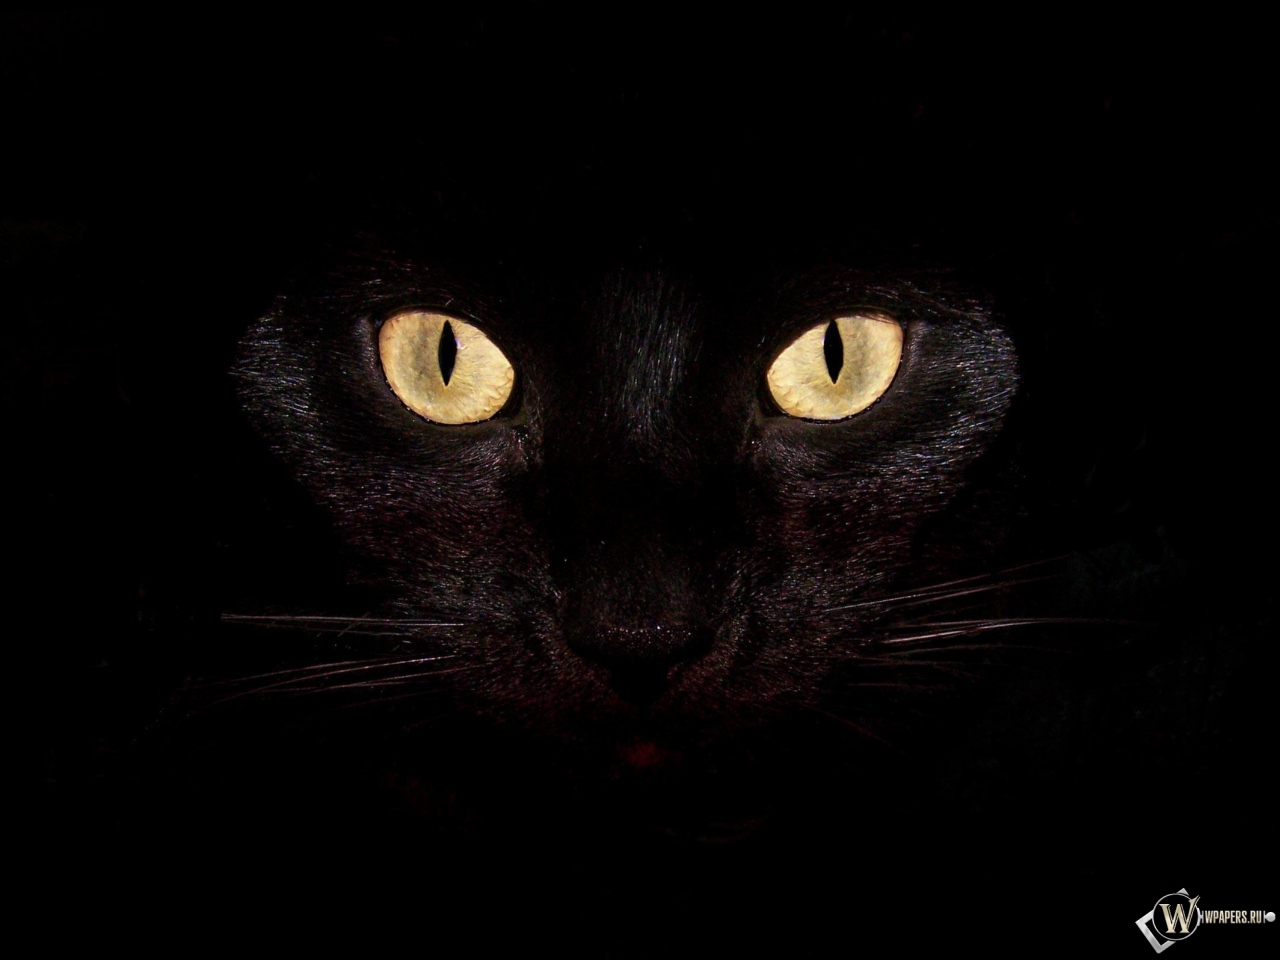 Черная кошка на чернофм фоне 1280x960